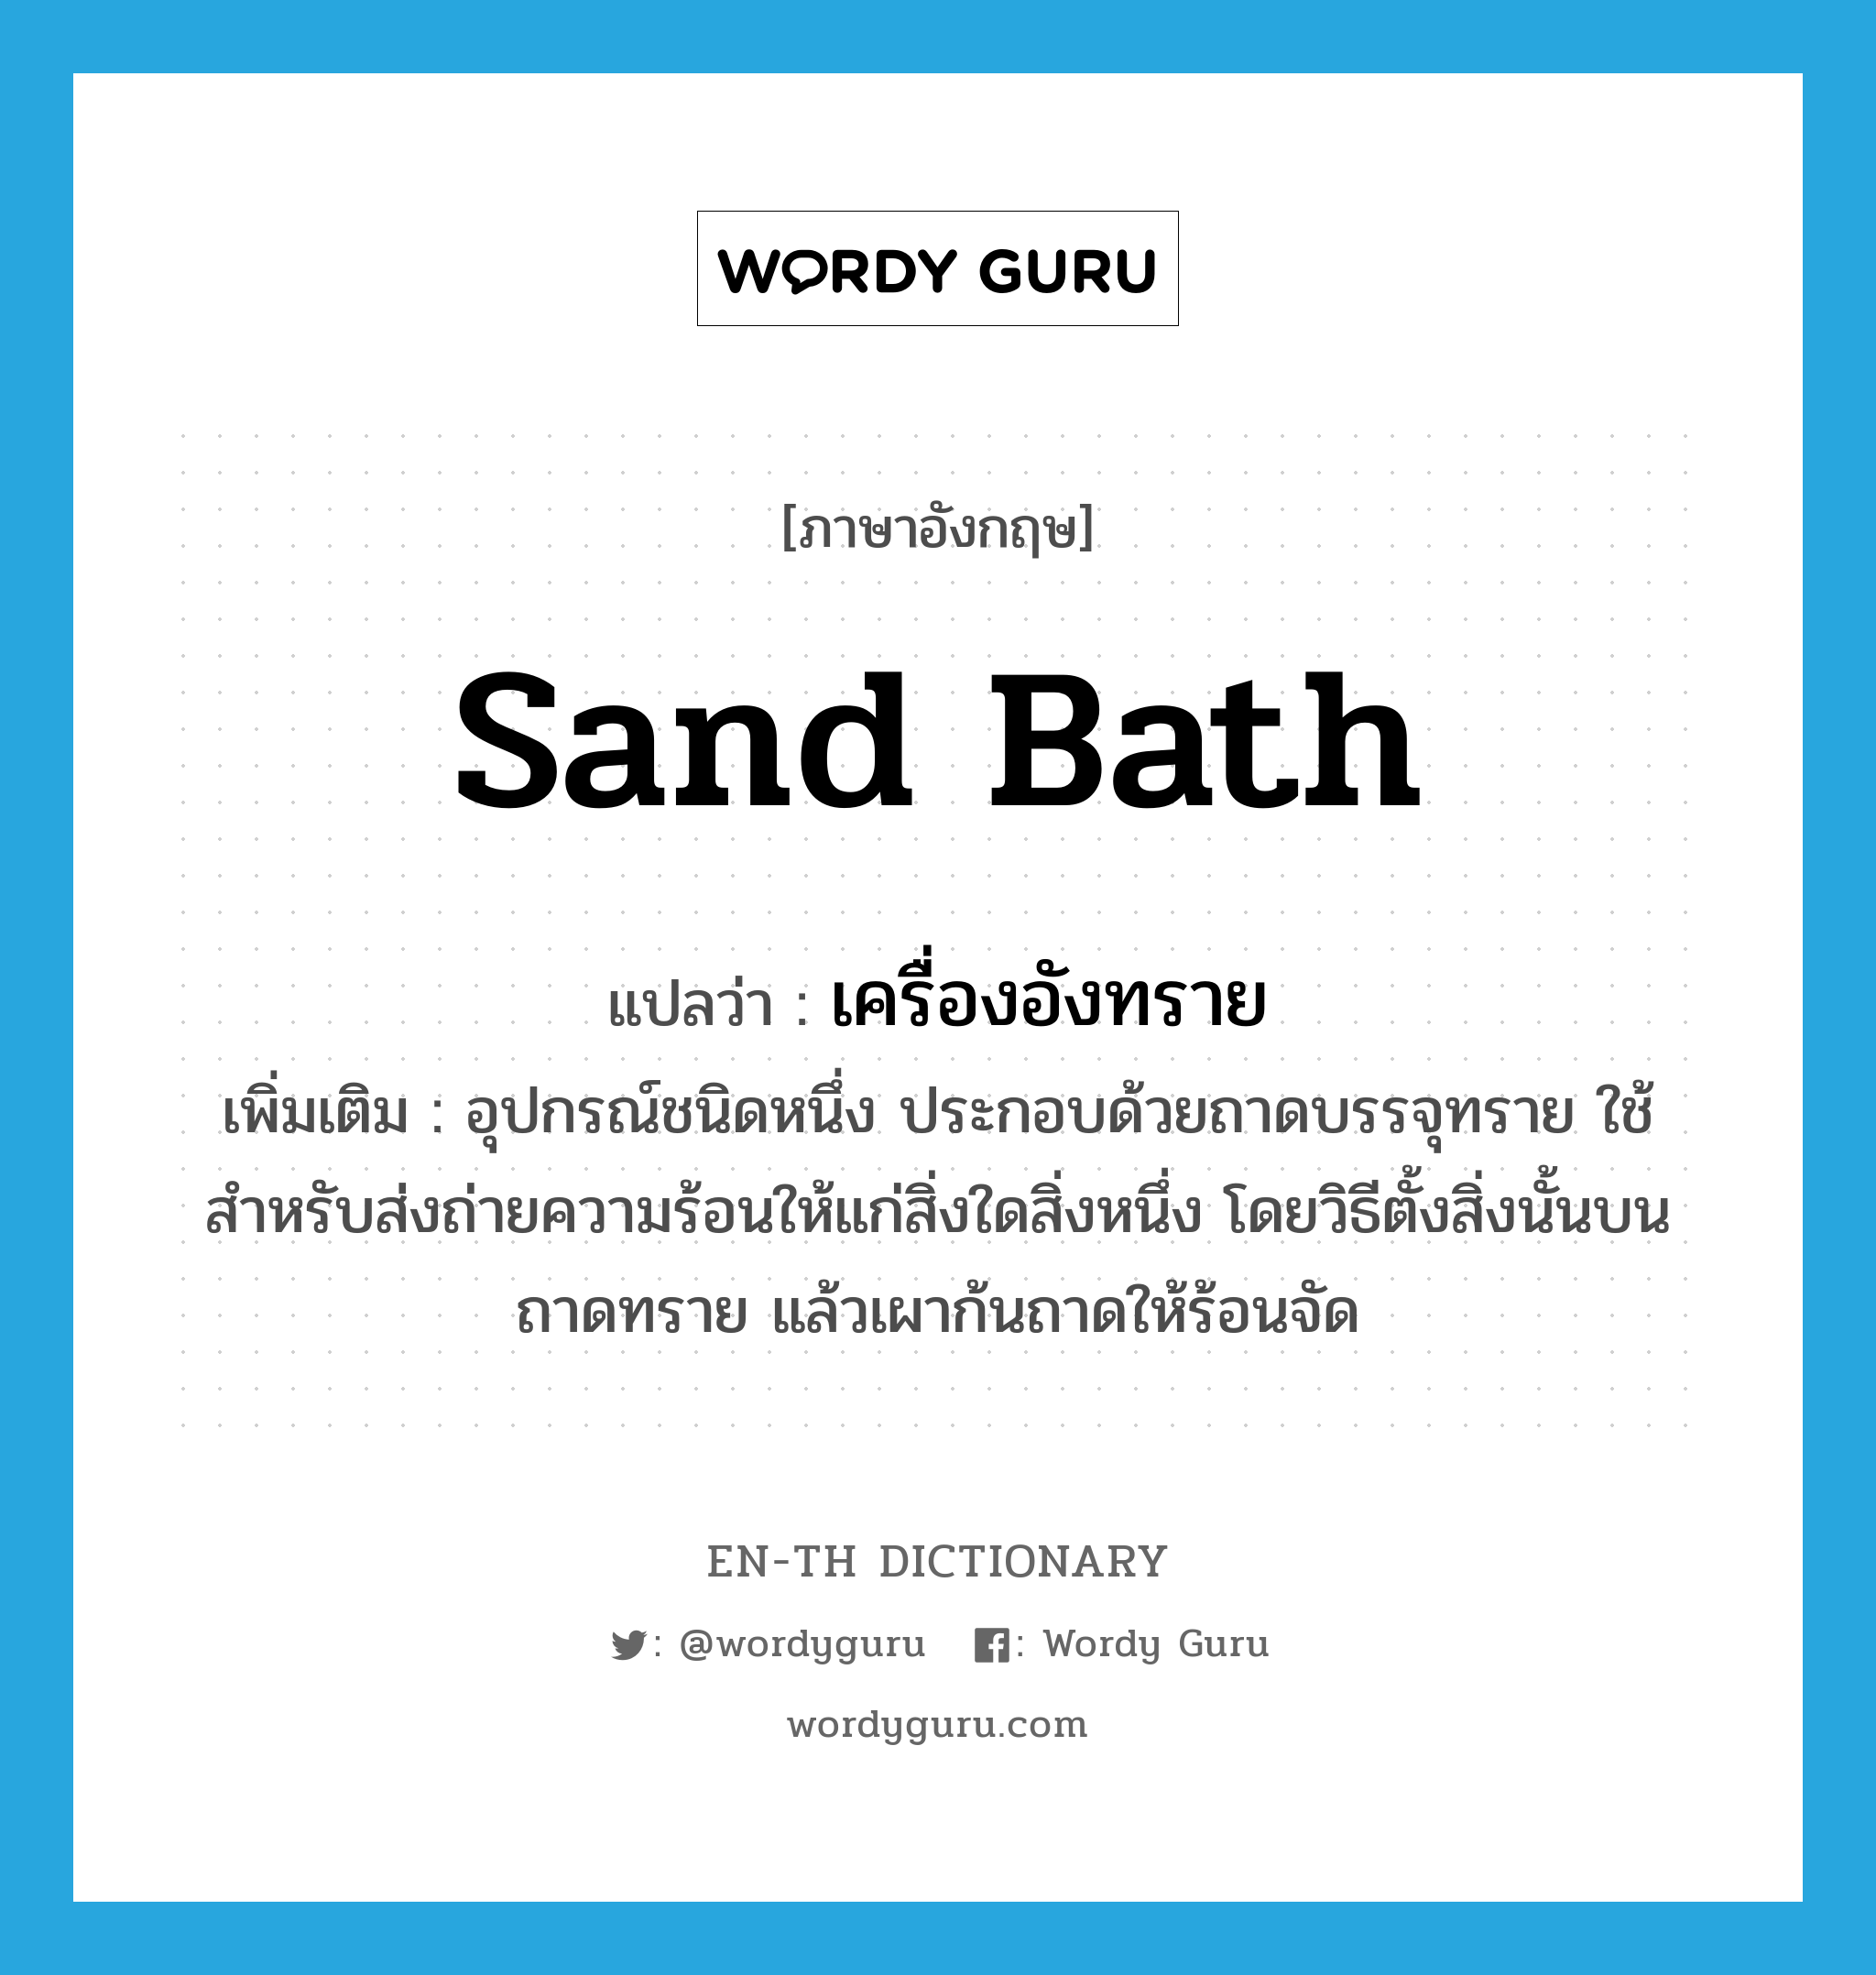 sand bath แปลว่า?, คำศัพท์ภาษาอังกฤษ sand bath แปลว่า เครื่องอังทราย ประเภท N เพิ่มเติม อุปกรณ์ชนิดหนึ่ง ประกอบด้วยถาดบรรจุทราย ใช้สำหรับส่งถ่ายความร้อนให้แก่สิ่งใดสิ่งหนึ่ง โดยวิธีตั้งสิ่งนั้นบนถาดทราย แล้วเผาก้นถาดให้ร้อนจัด หมวด N